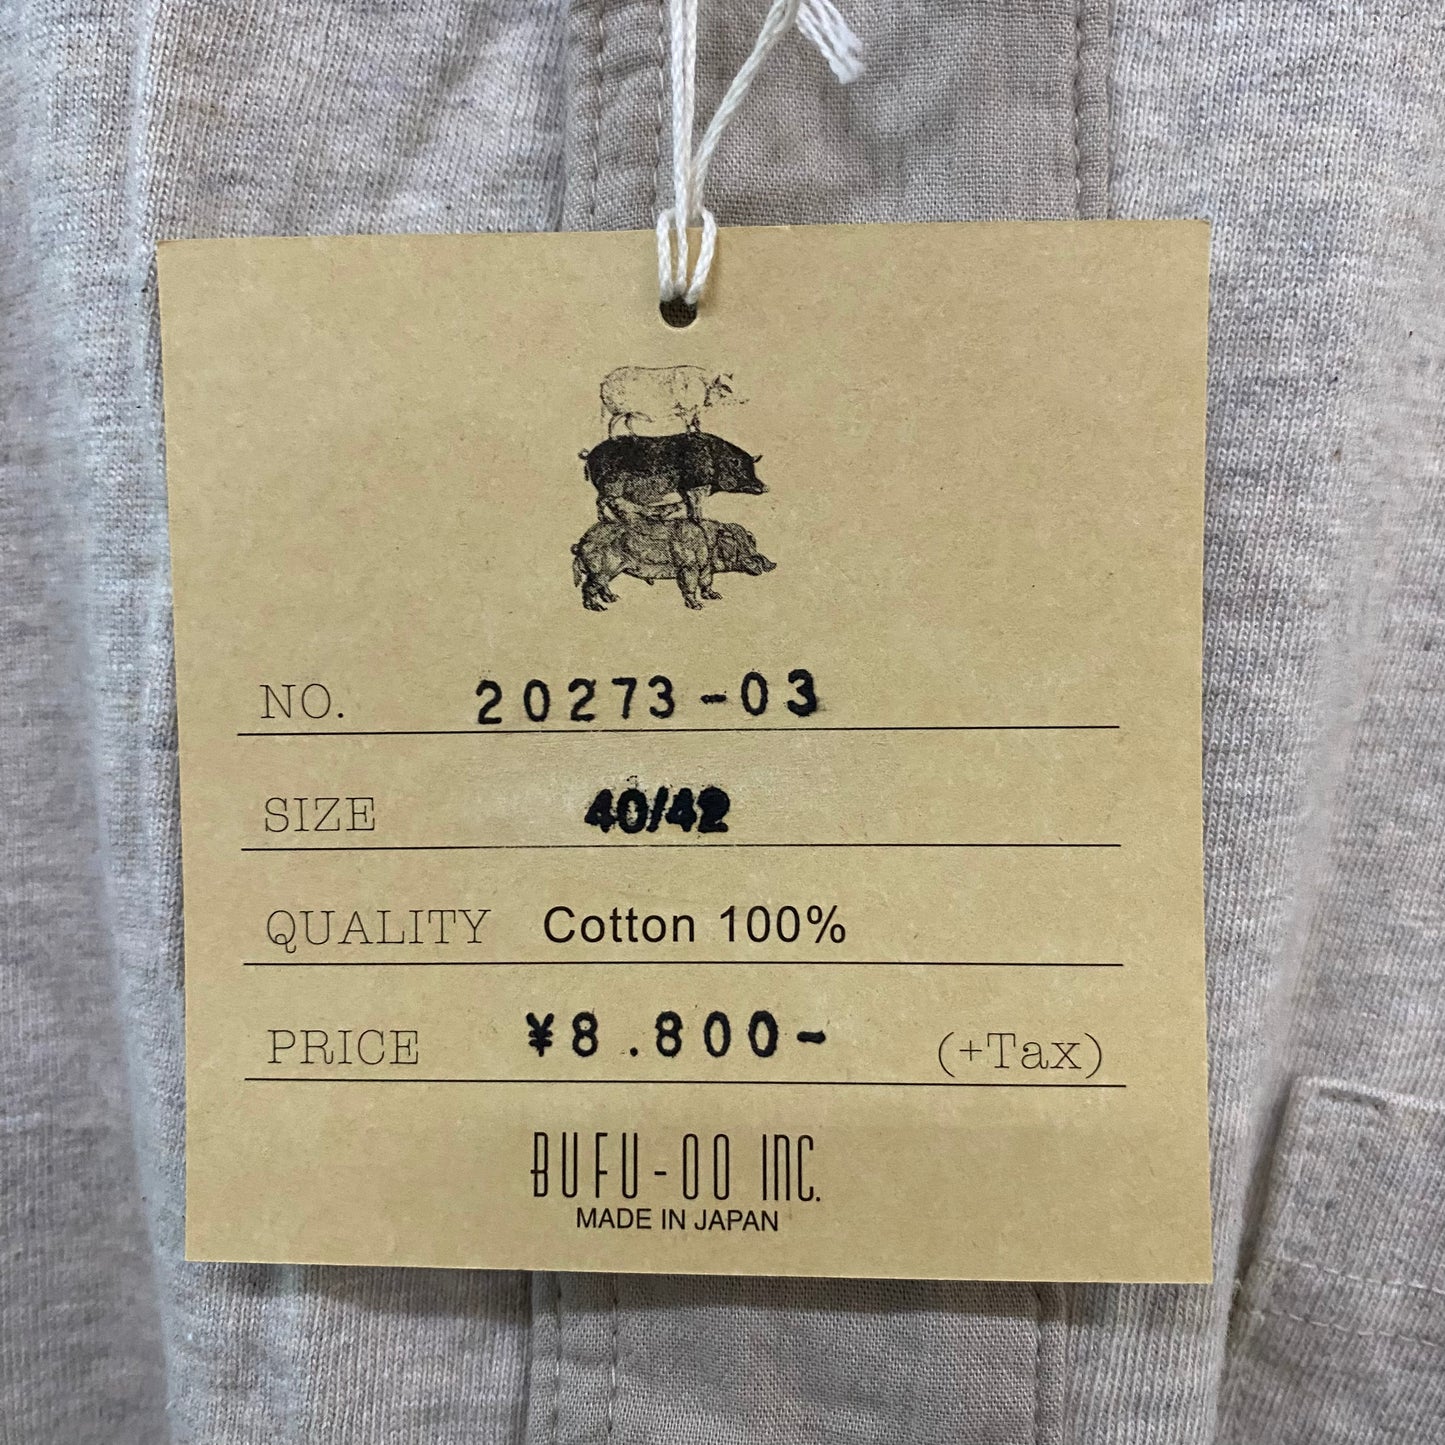 TWO MOON/トゥームーン リサイクルコットンヘンリーネックポケットTシャツ/20273-01